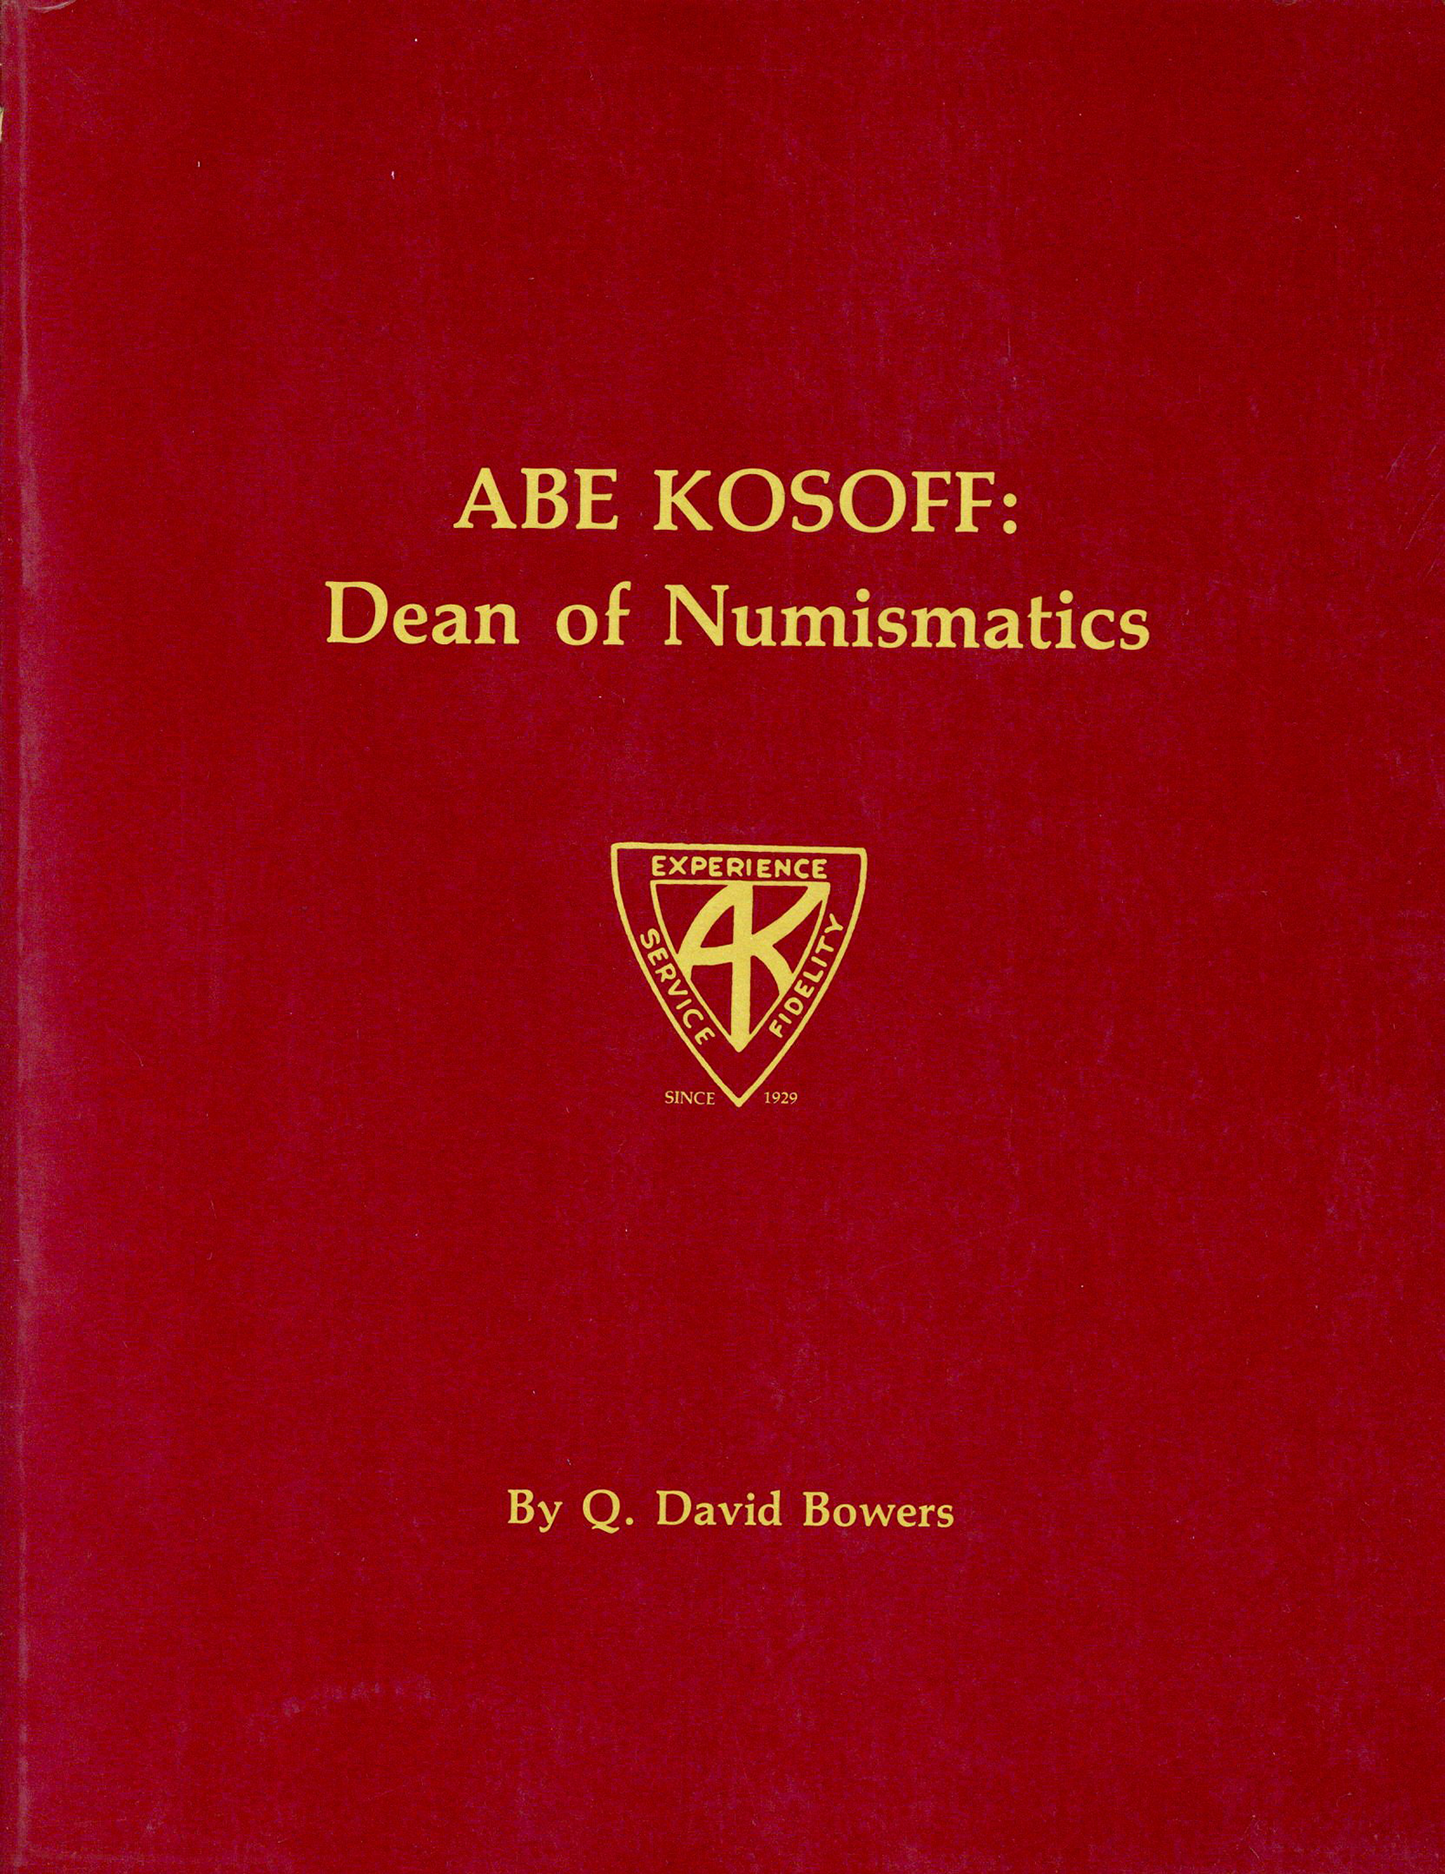 Abe Kosoff: Dean of Numismatics